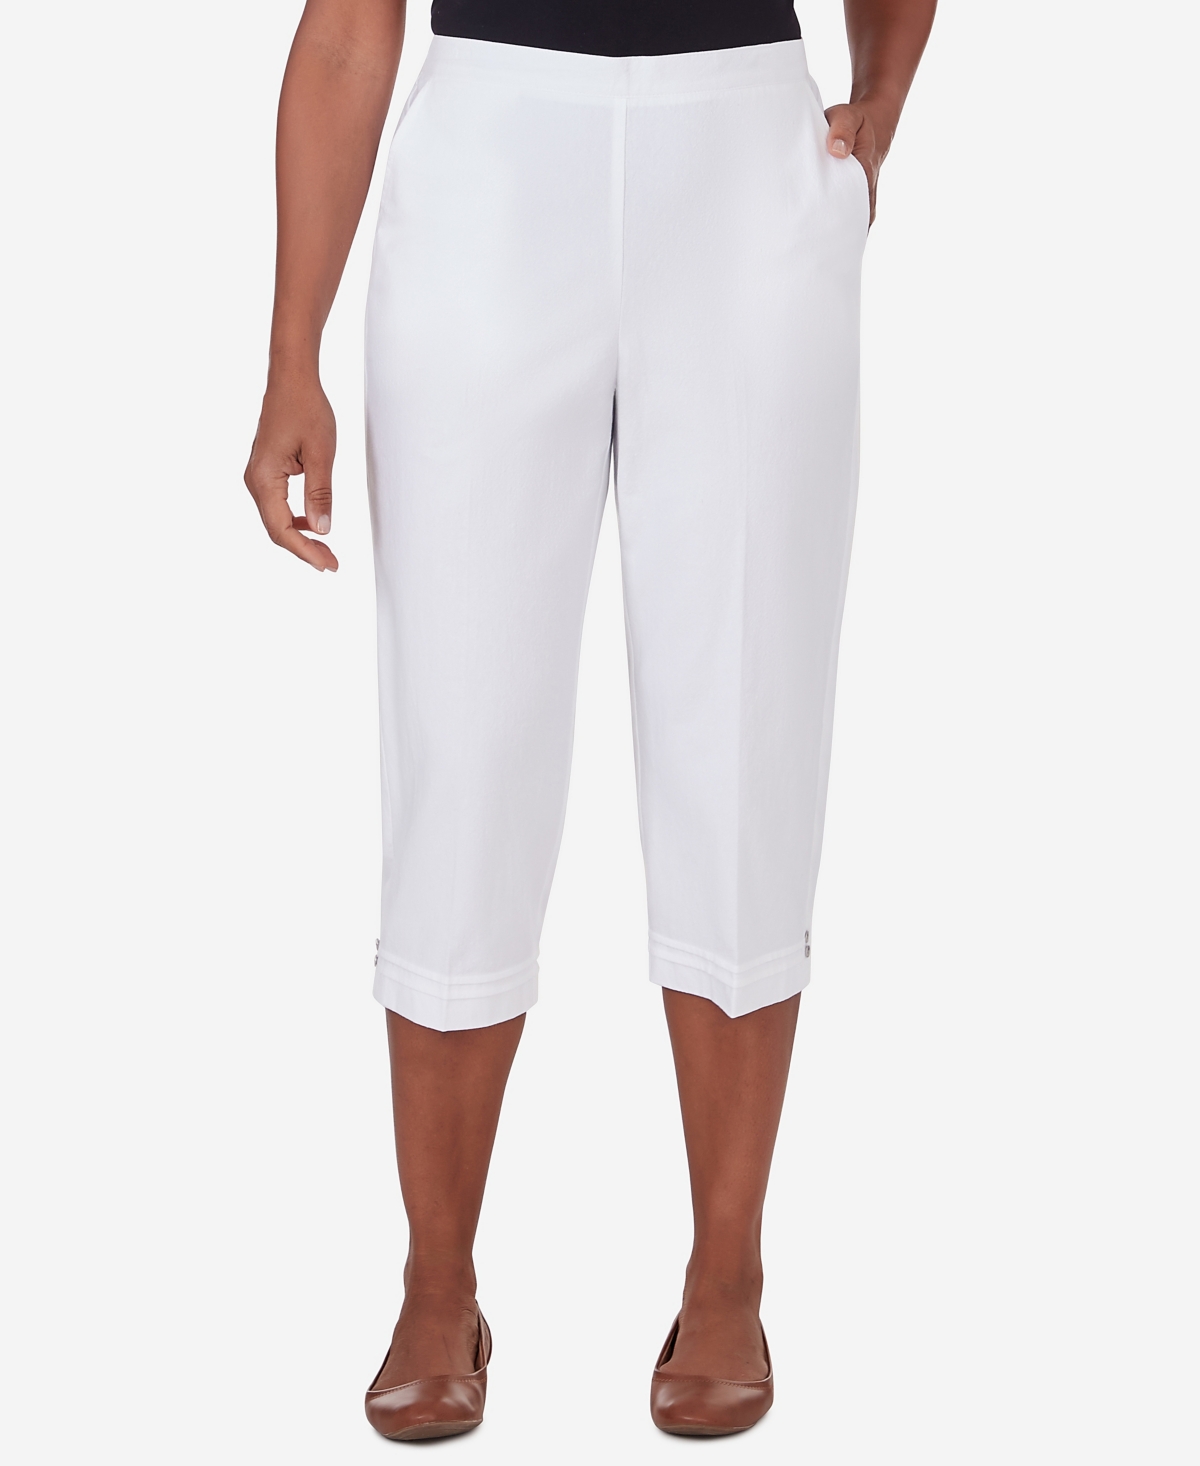 Women's Hyannisport Pull-On Capri Pants - White